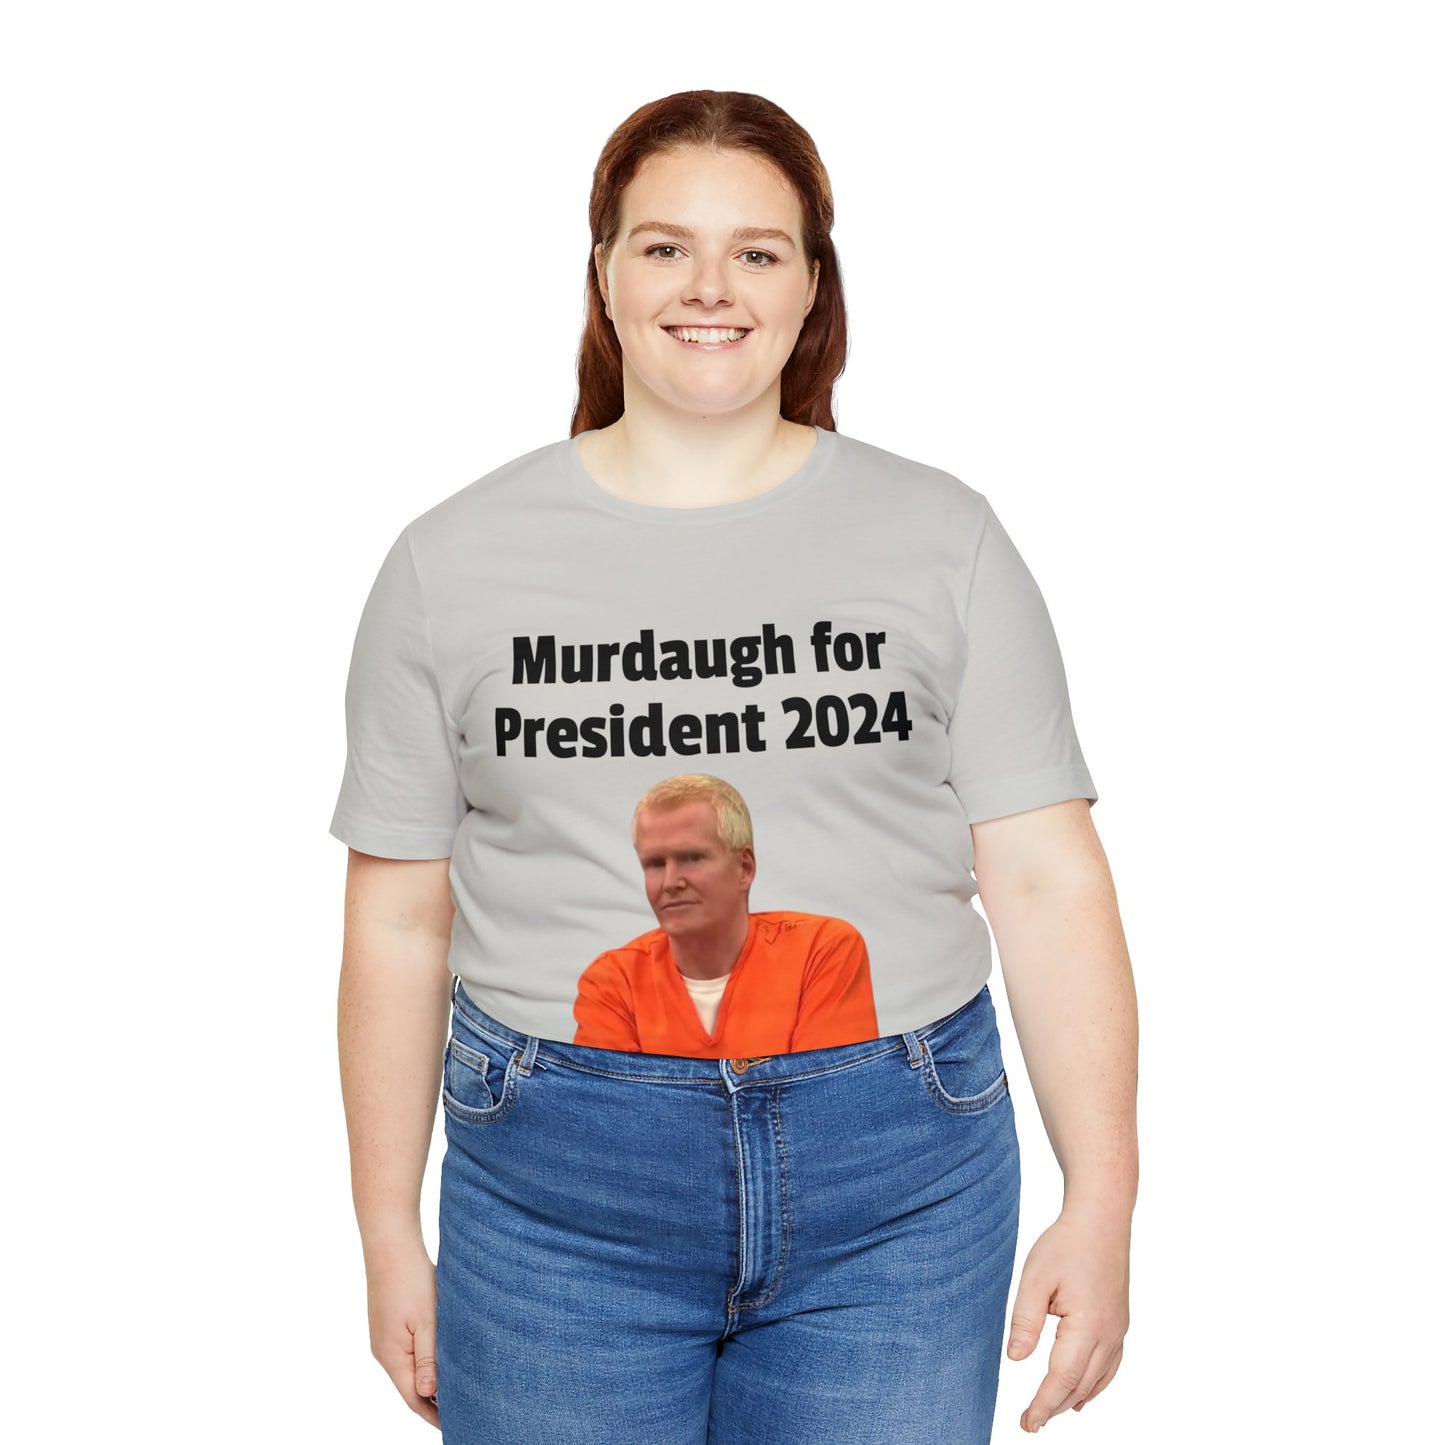 Murdaugh for President 2024